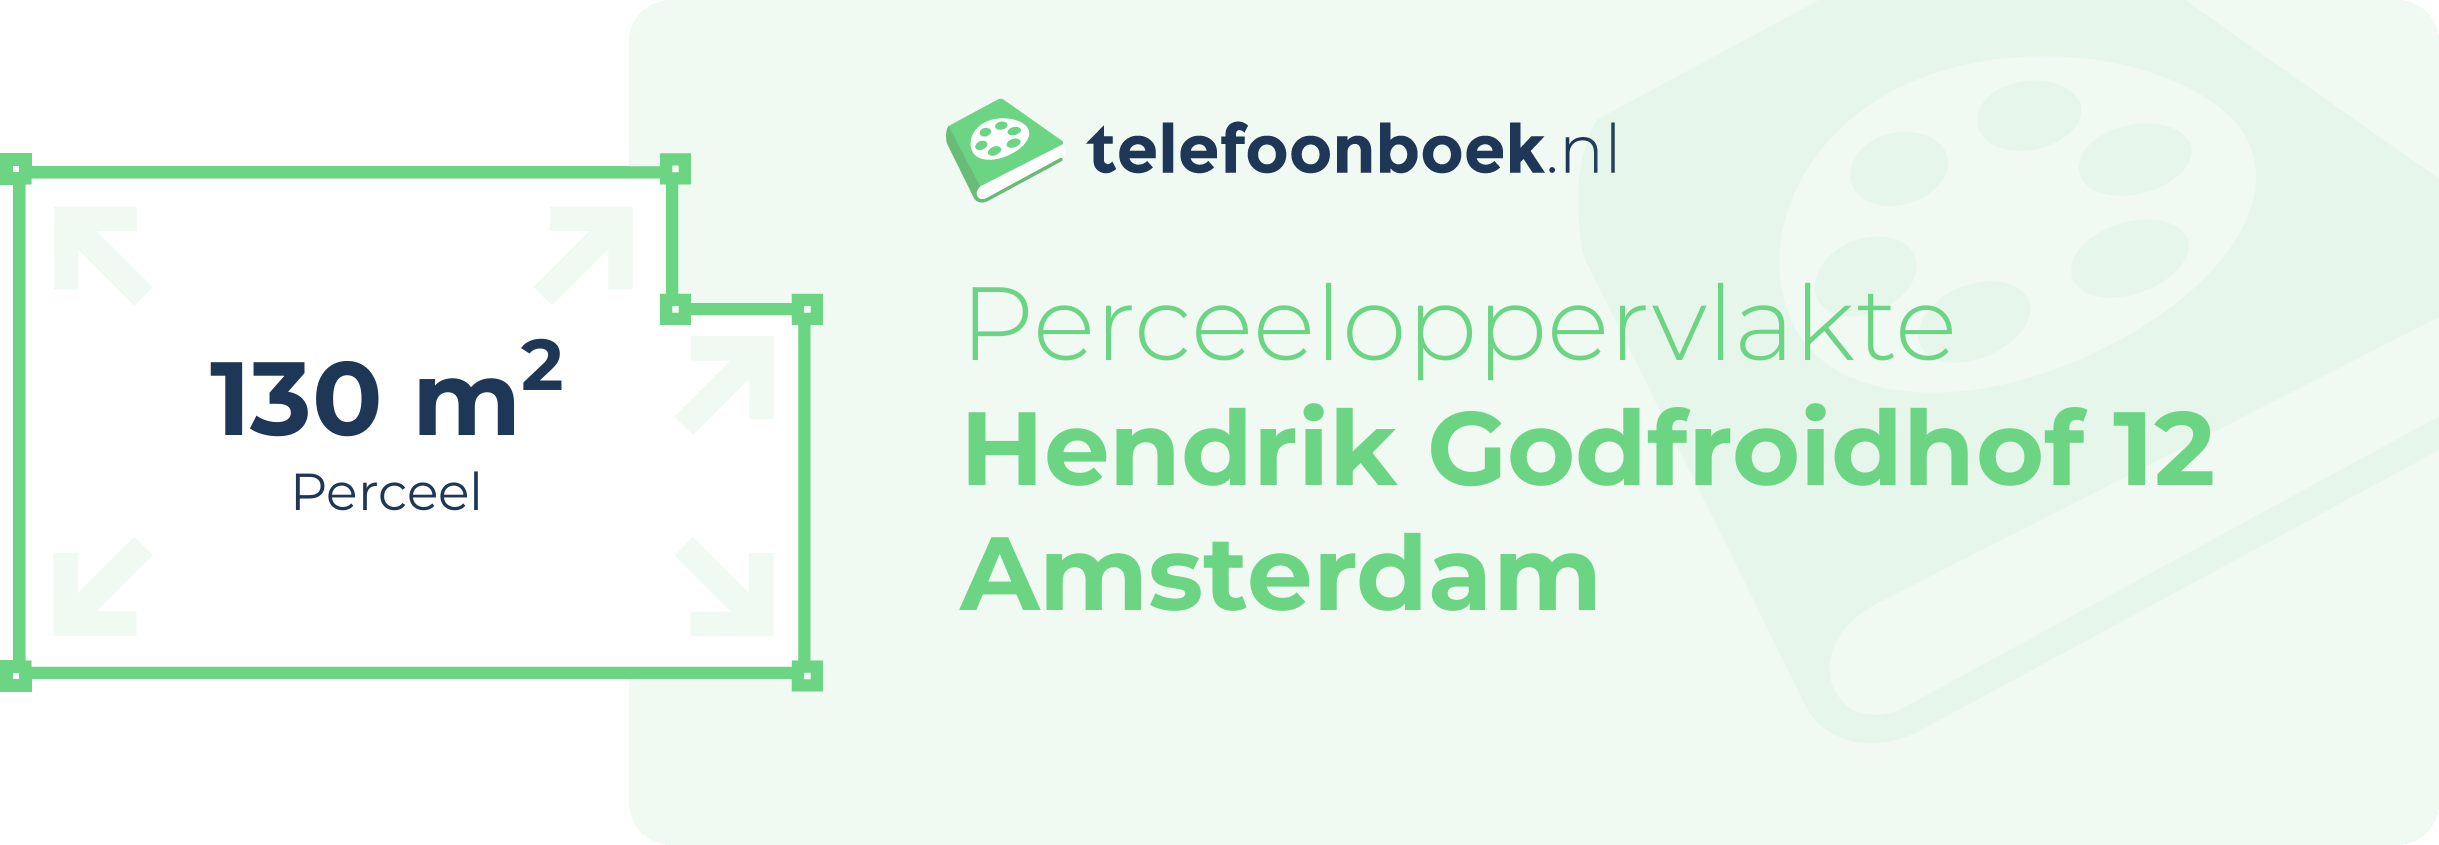 Perceeloppervlakte Hendrik Godfroidhof 12 Amsterdam